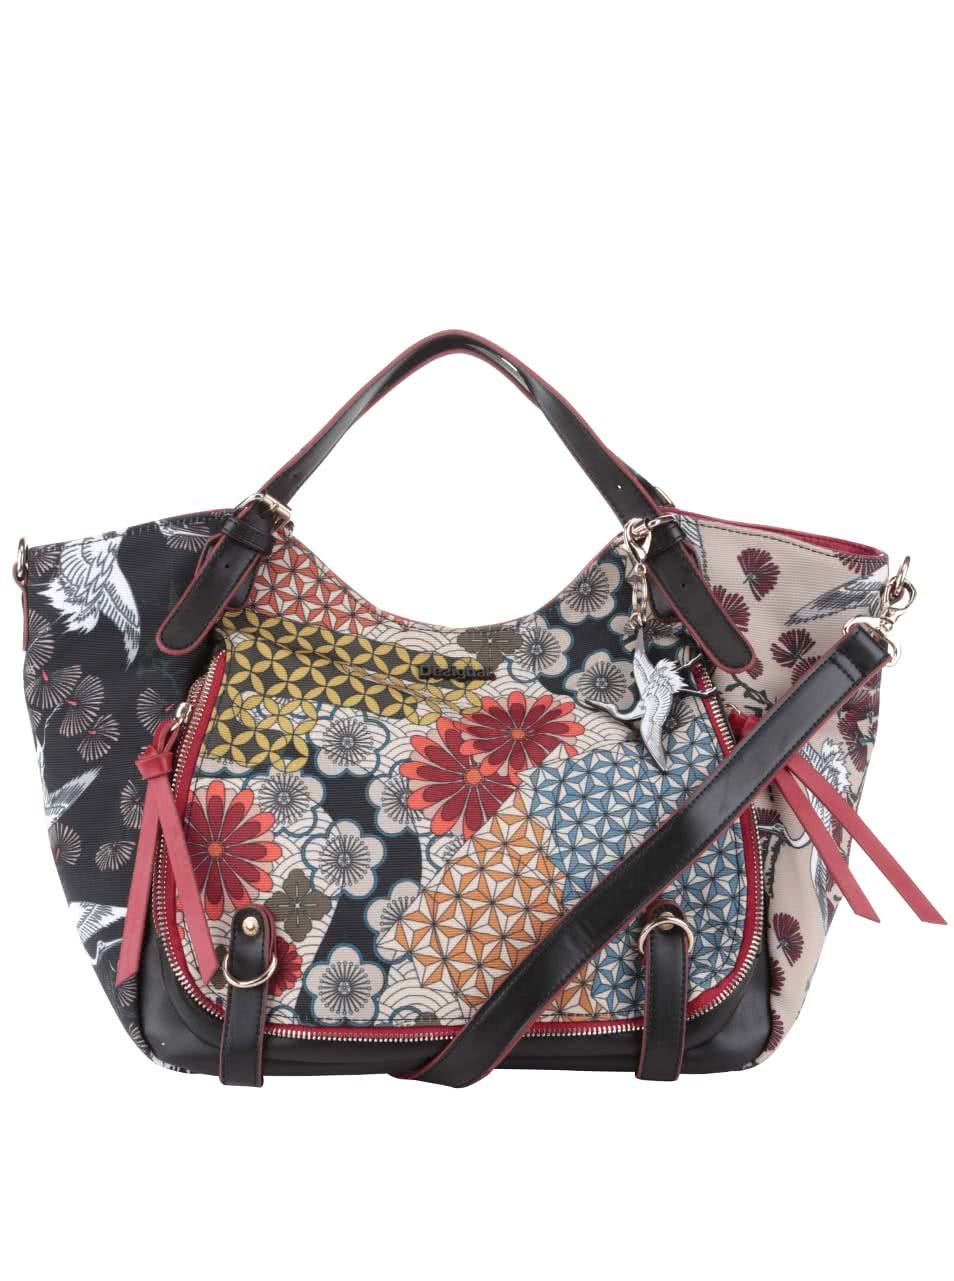 Béžovo-černá kabelka s barevnými květy Desigual Japan Fresh